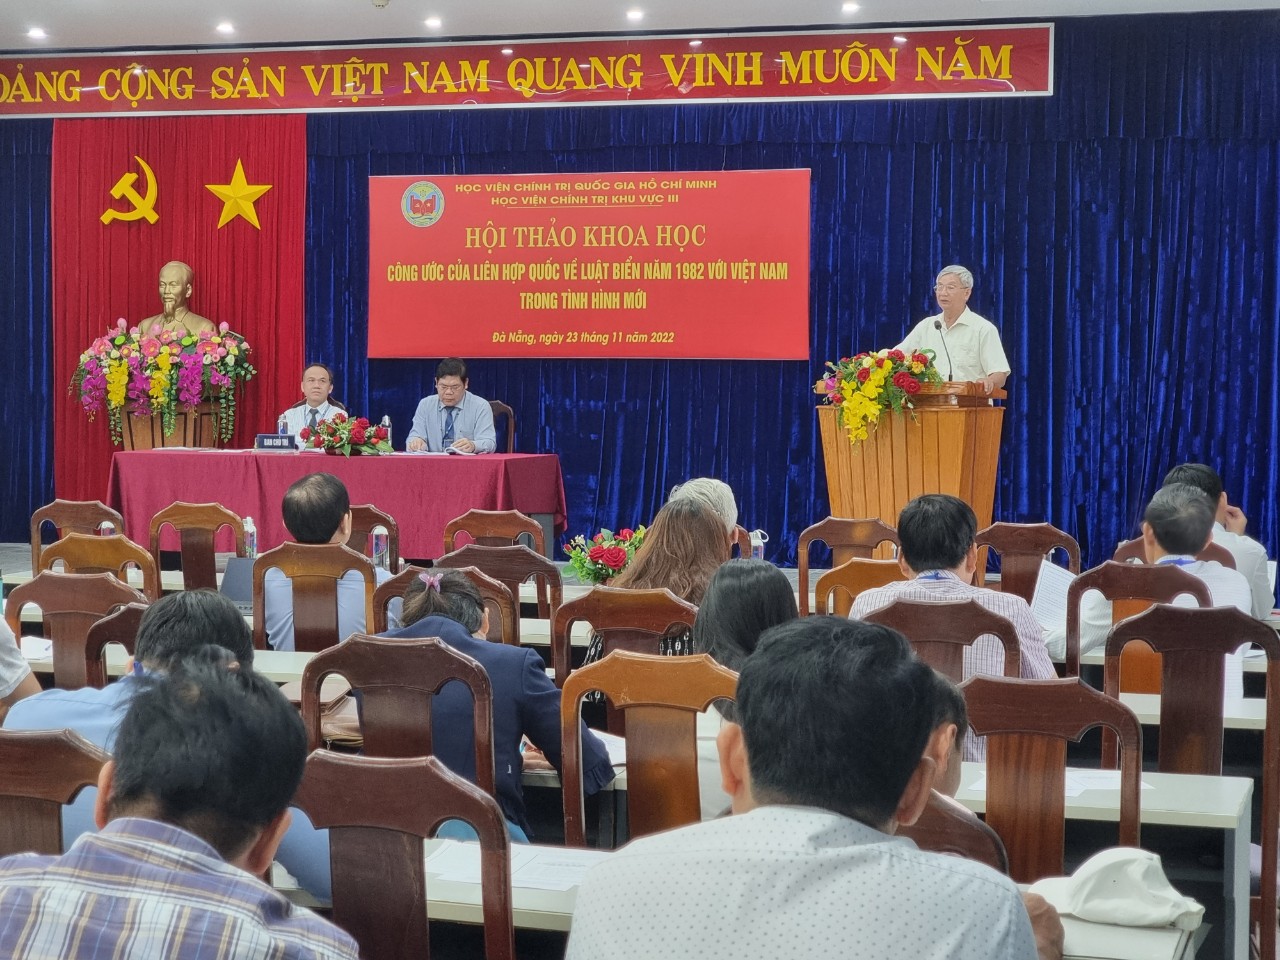 Hội thảo khoa học UNCLOS 1982 với Việt Nam trong tình hình mới - Ảnh 2.